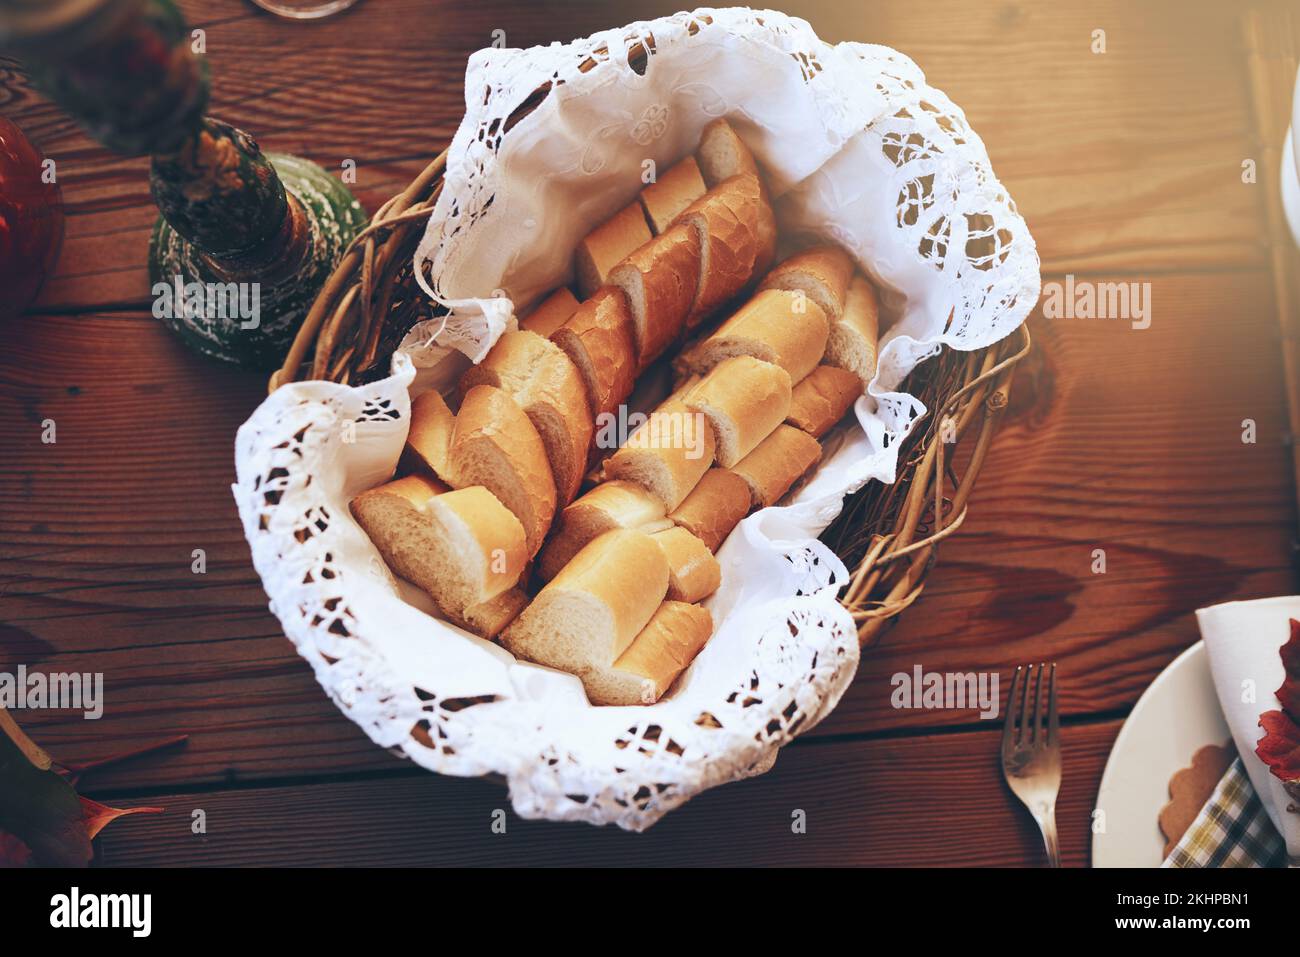 Brot, Speisen und Korb mit Vorspeise auf einem hölzernen Esstisch in einem Haus für eine Feier. Party, Mittagessen und Mutrition mit einem Baguette Stockfoto